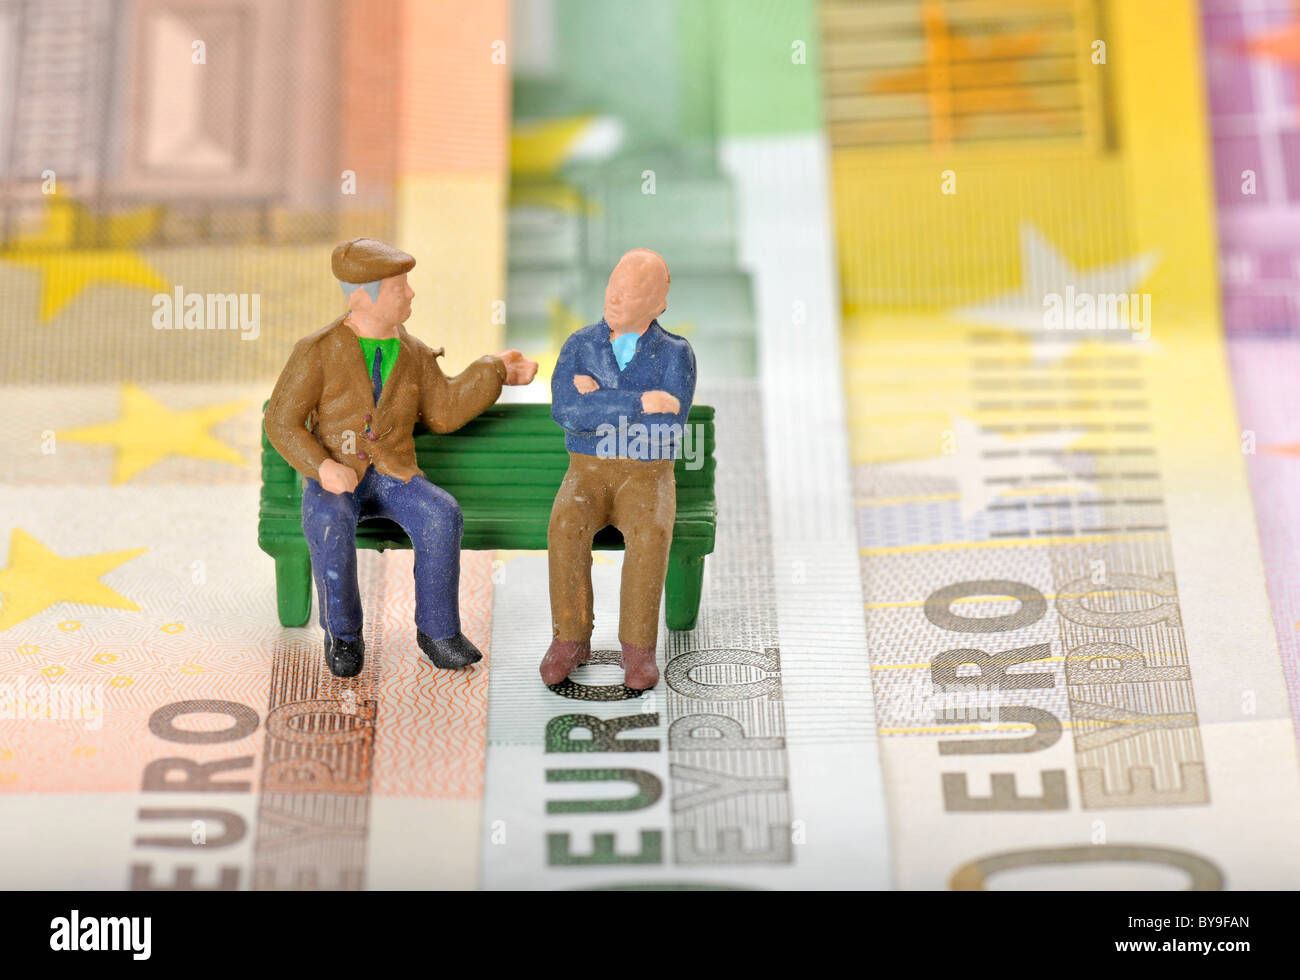 Varie banconote in euro con figure in miniatura di cittadini anziani su una panchina nel parco, immagine simbolica per la pensione o pensione di Foto Stock